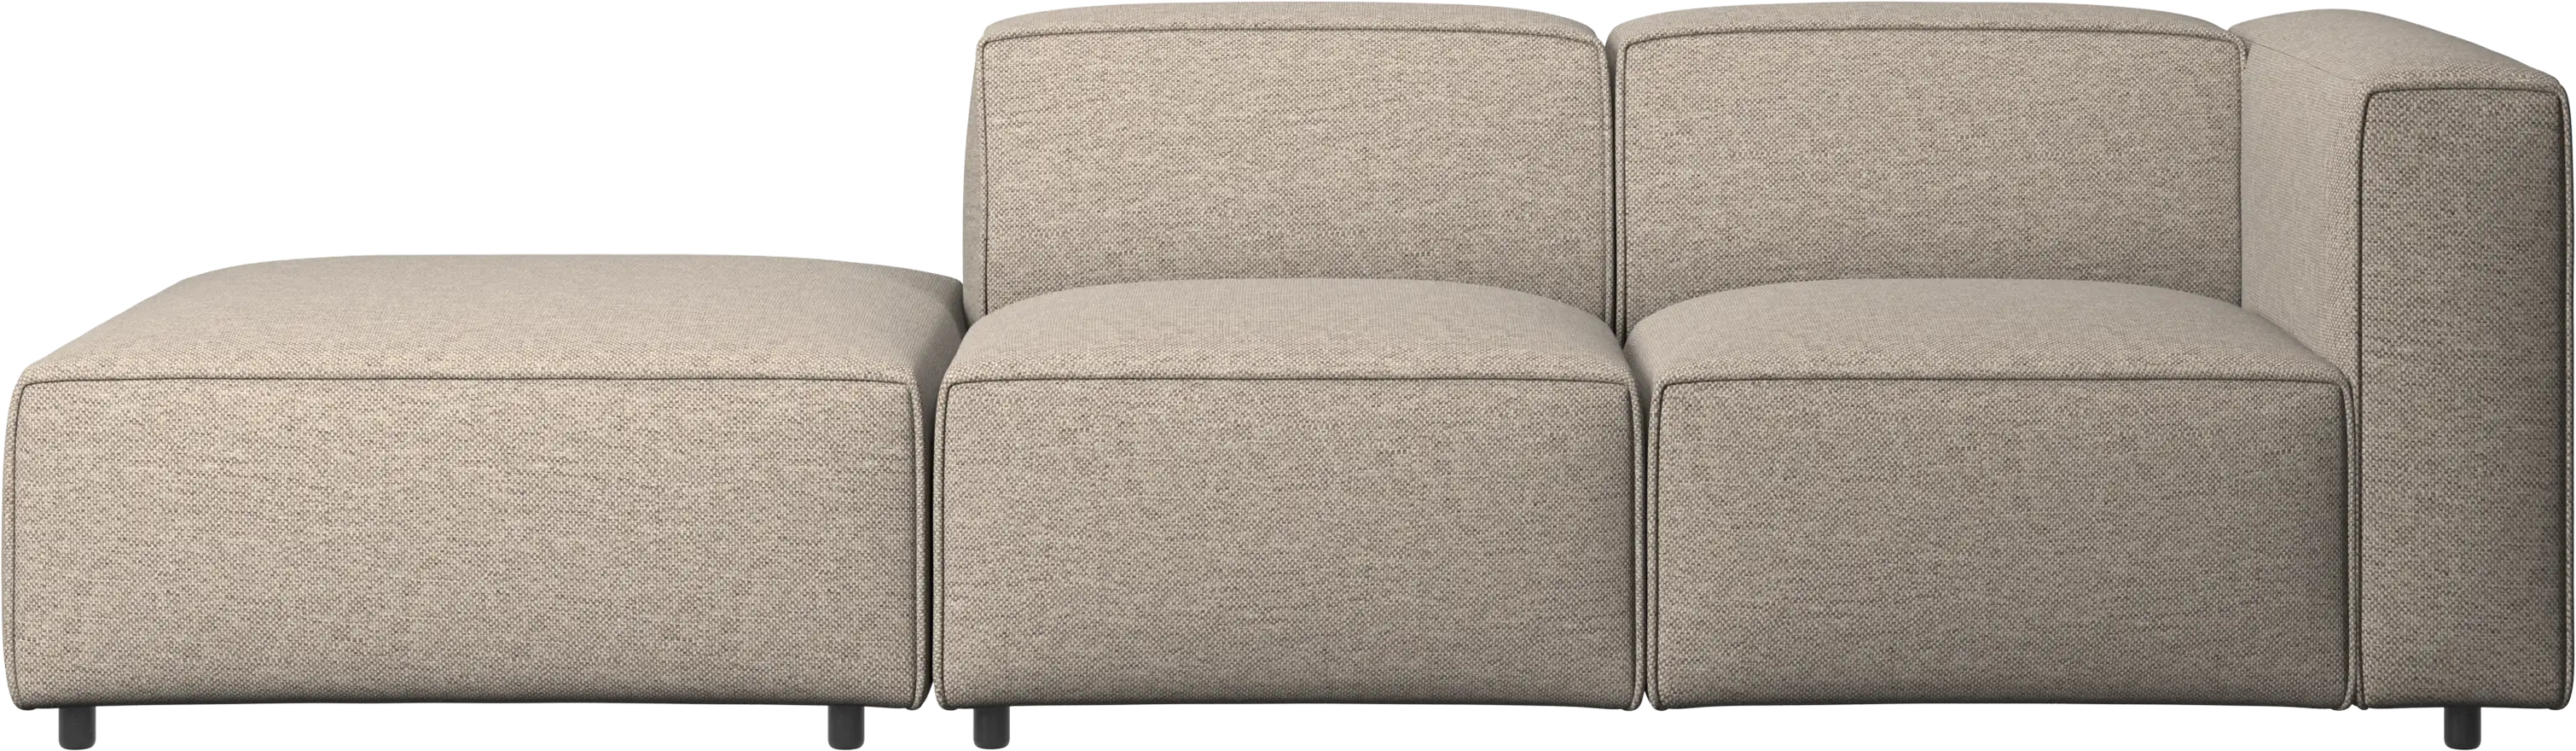 Carmo verstellbares Sofa